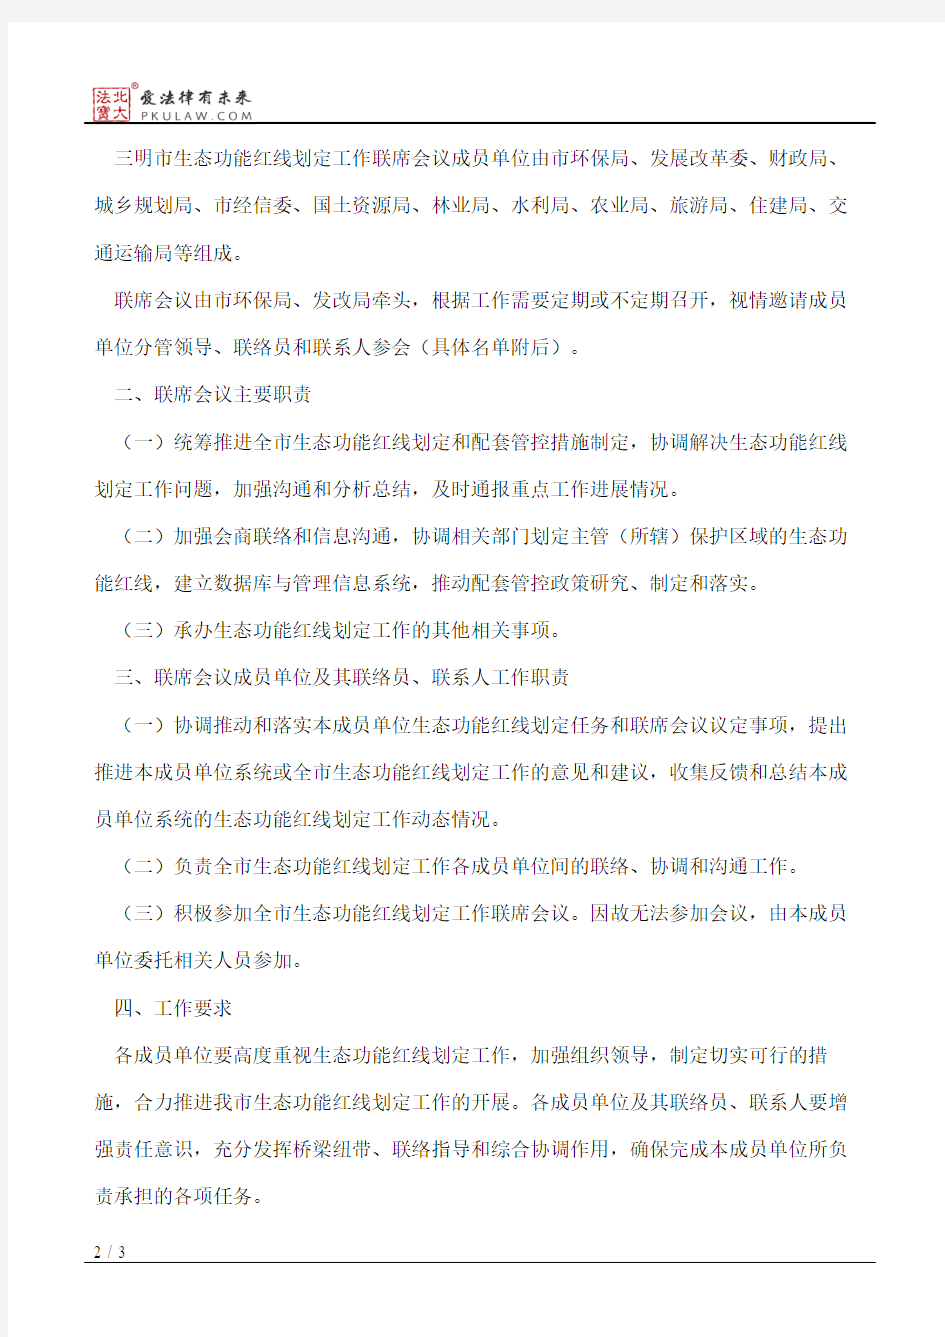 三明市人民政府办公室关于建立三明市生态保护红线划定工作联席会